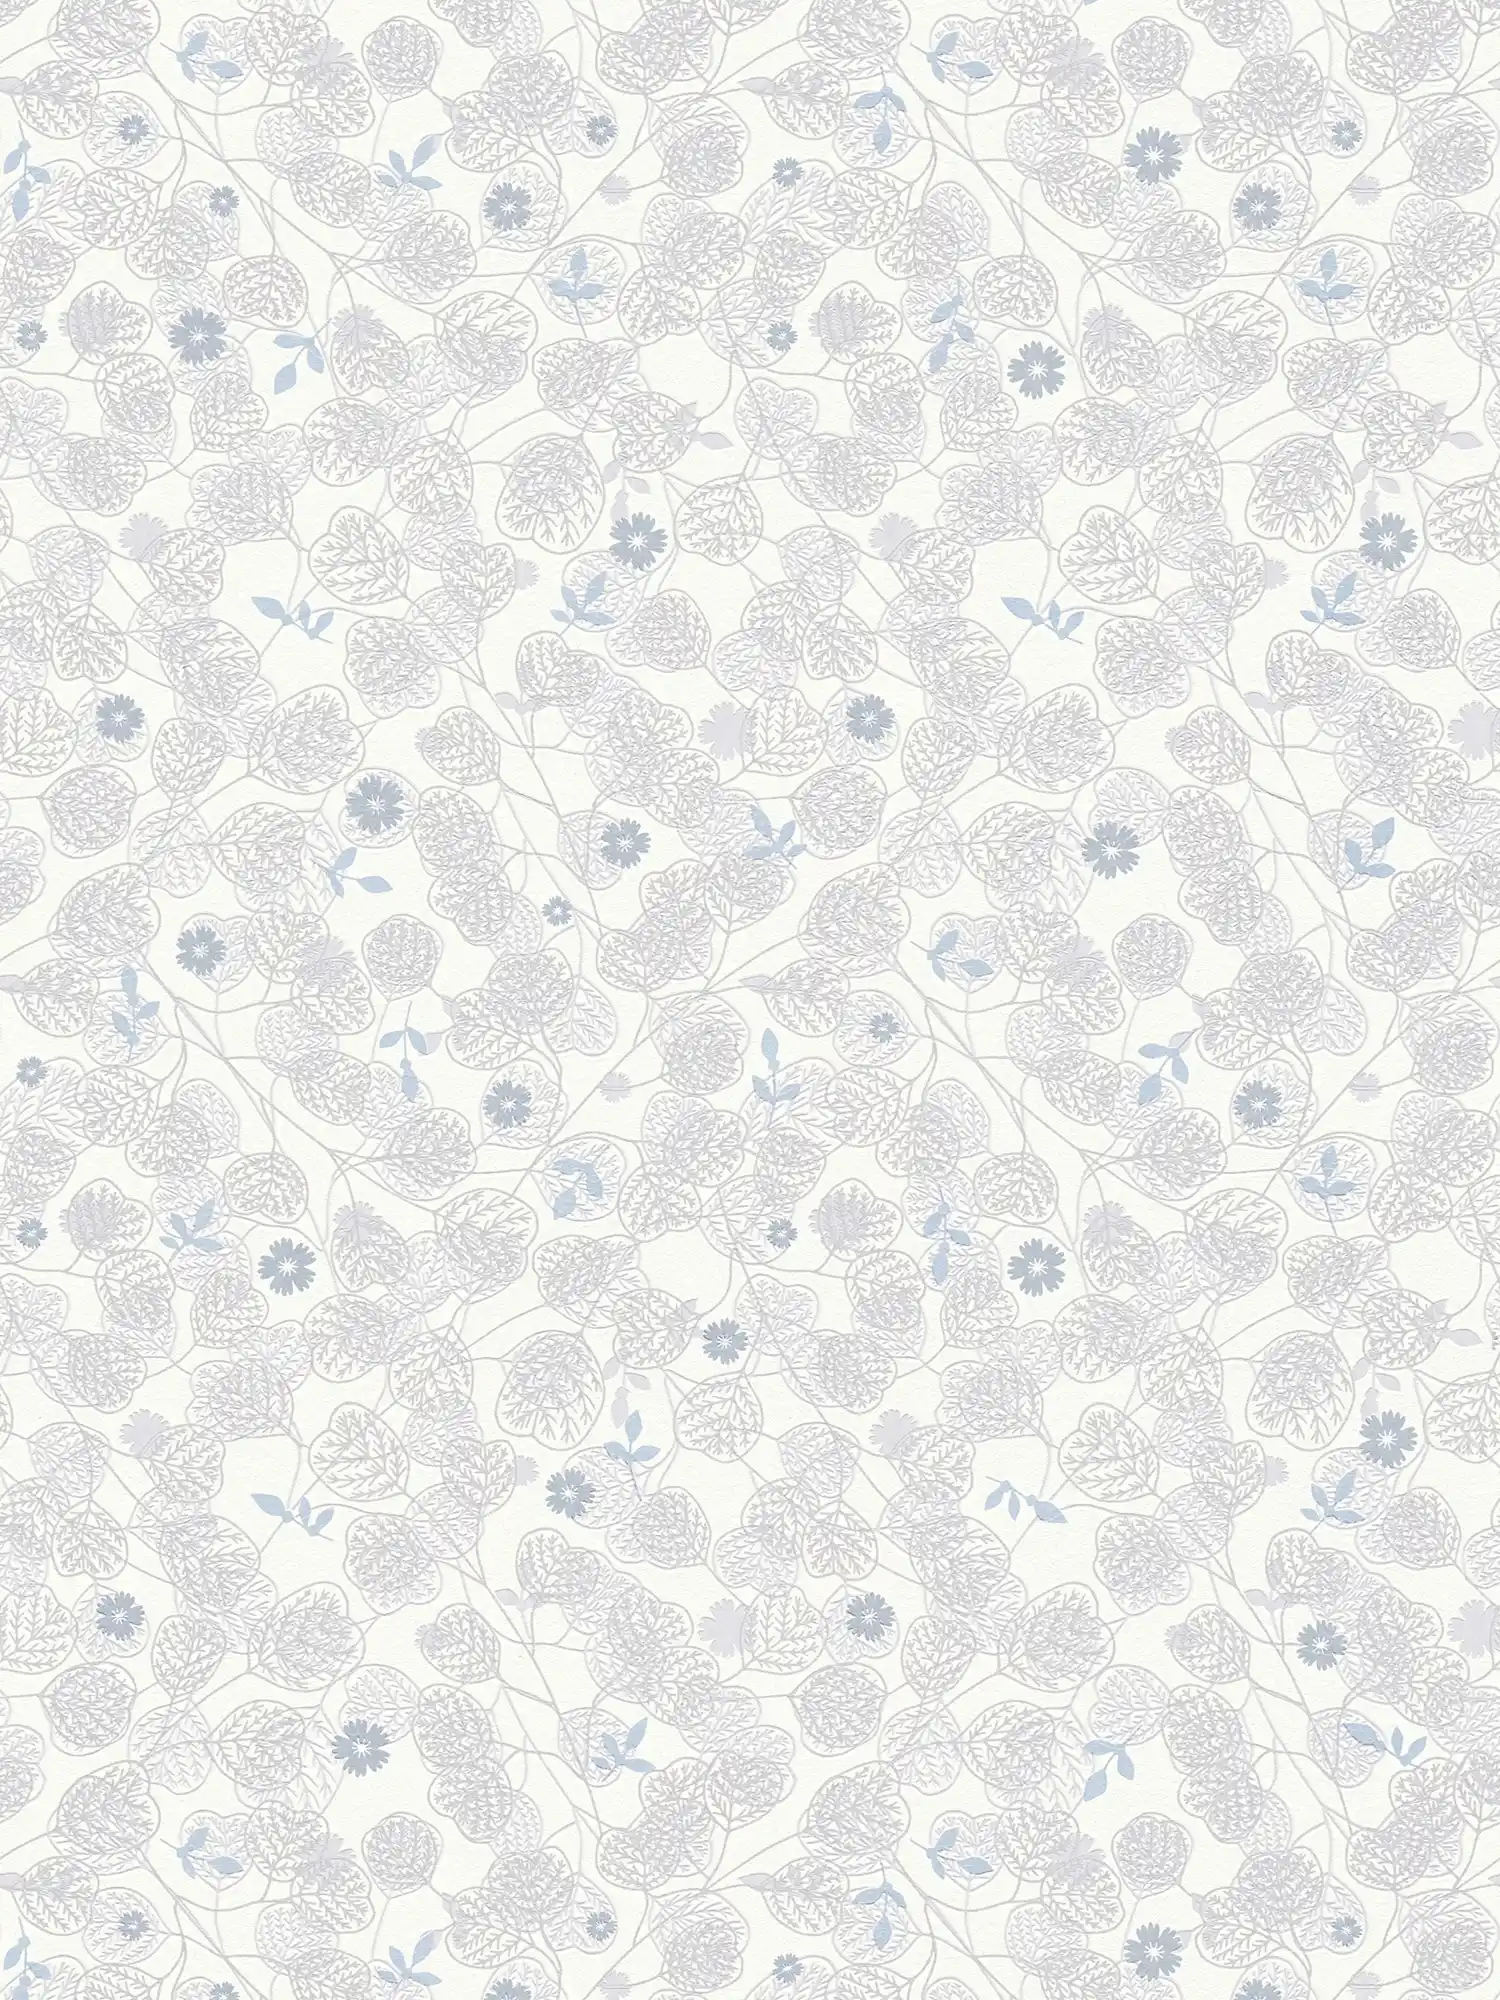 Blumentapete mit dezenten Blüten & Blättern – Weiß, Grau, Blau
